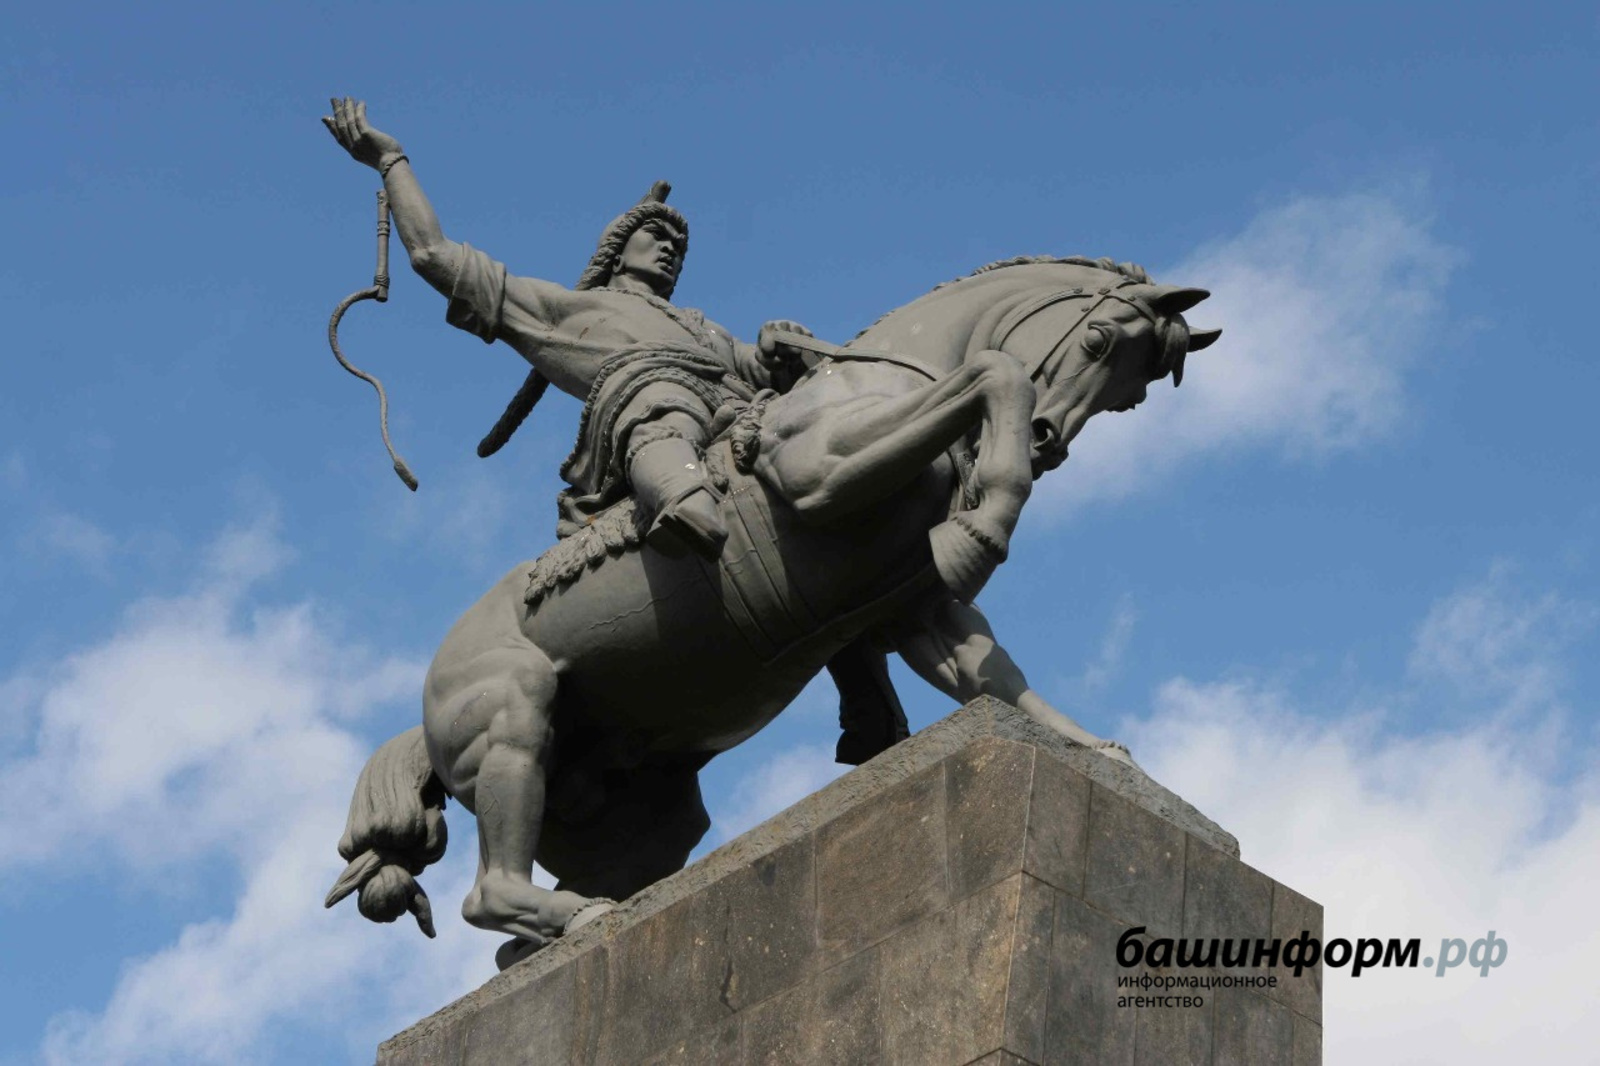 Работы по реконструкции памятника Салавату Юлаеву в Уфе могут начаться уже будущим летом